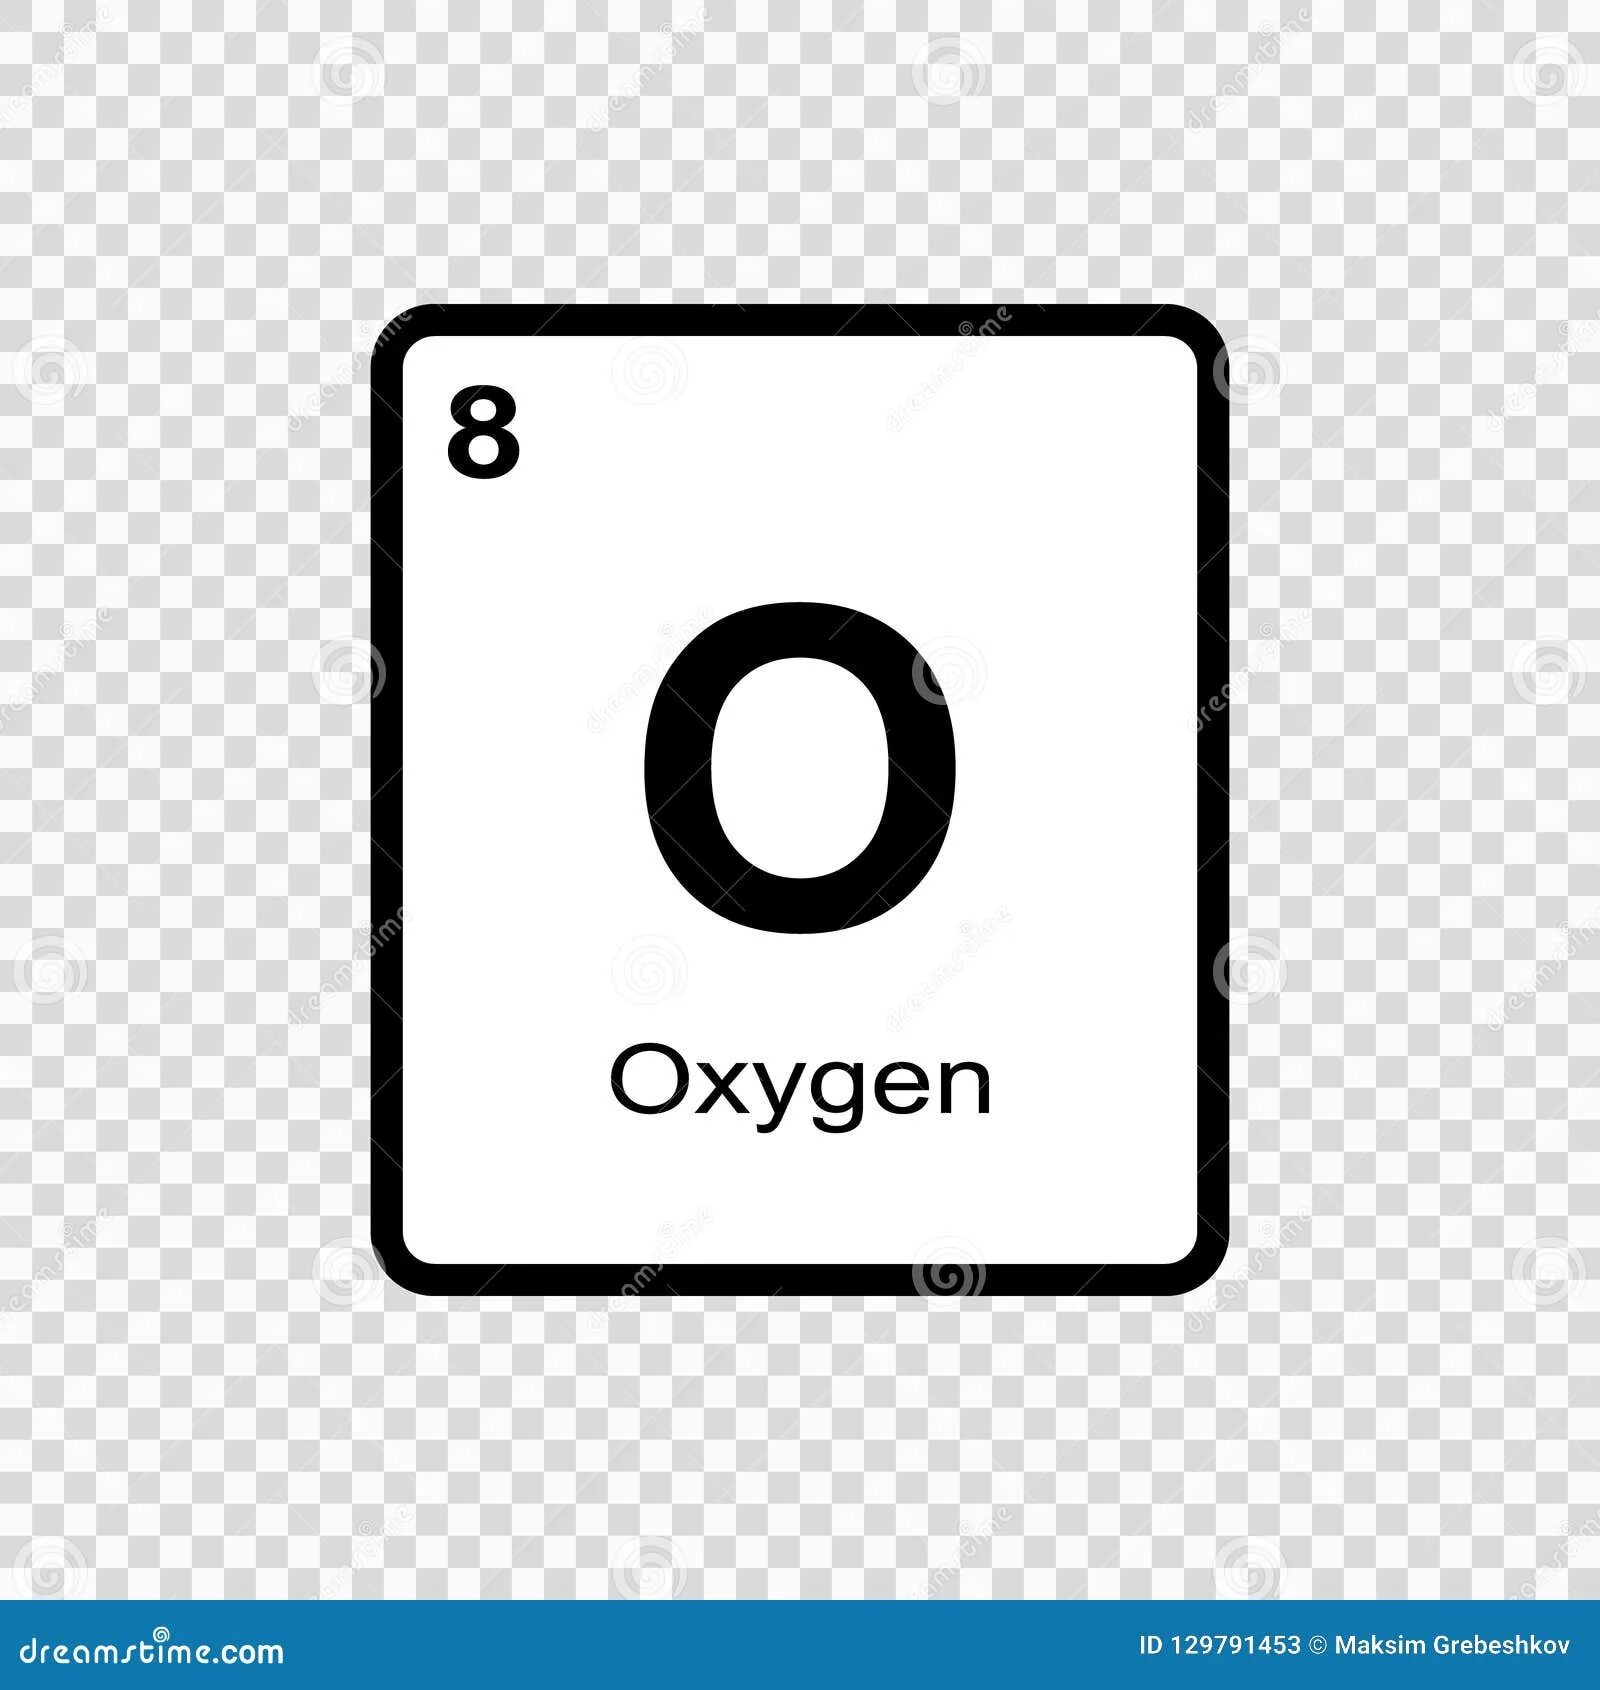 Символ элемента кислород. Химический знак кислорода. Химический символ кислорода. Кислород химия элемент. Oxygen химический элемент.